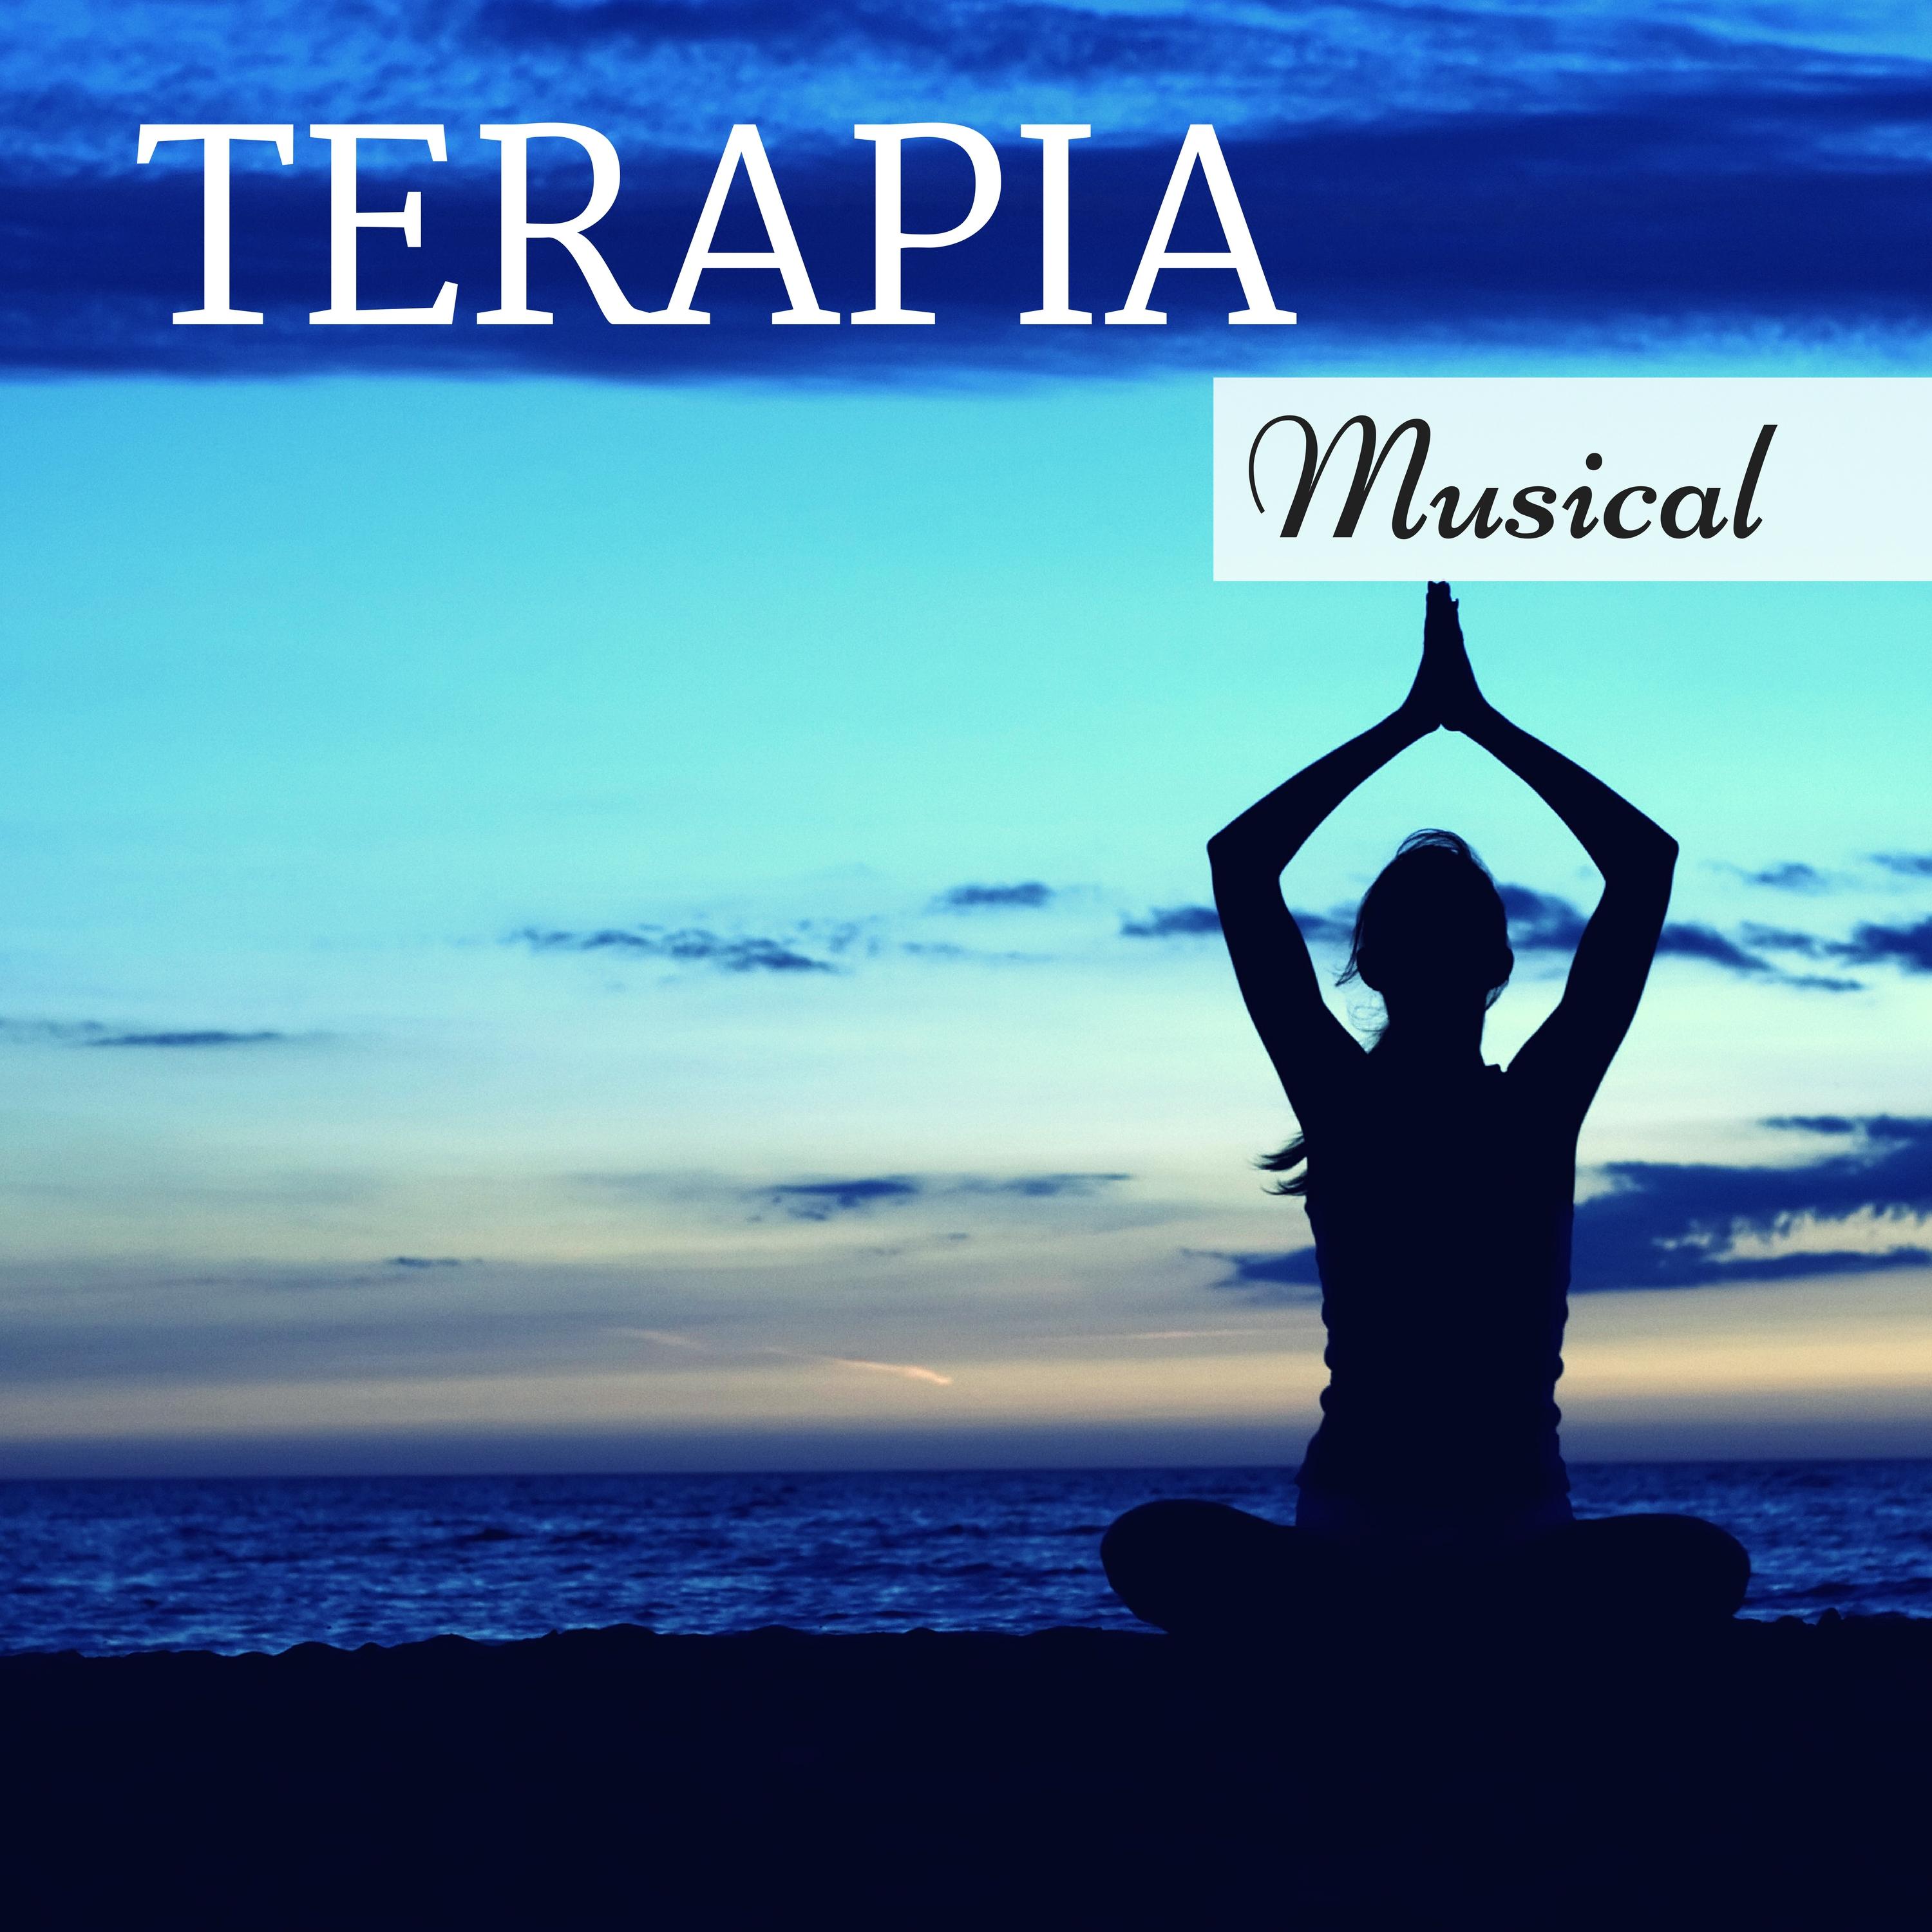 Terapia Musical - Sonidos Relajantes para Ejercicios de Yoga, Respiracion Profunda